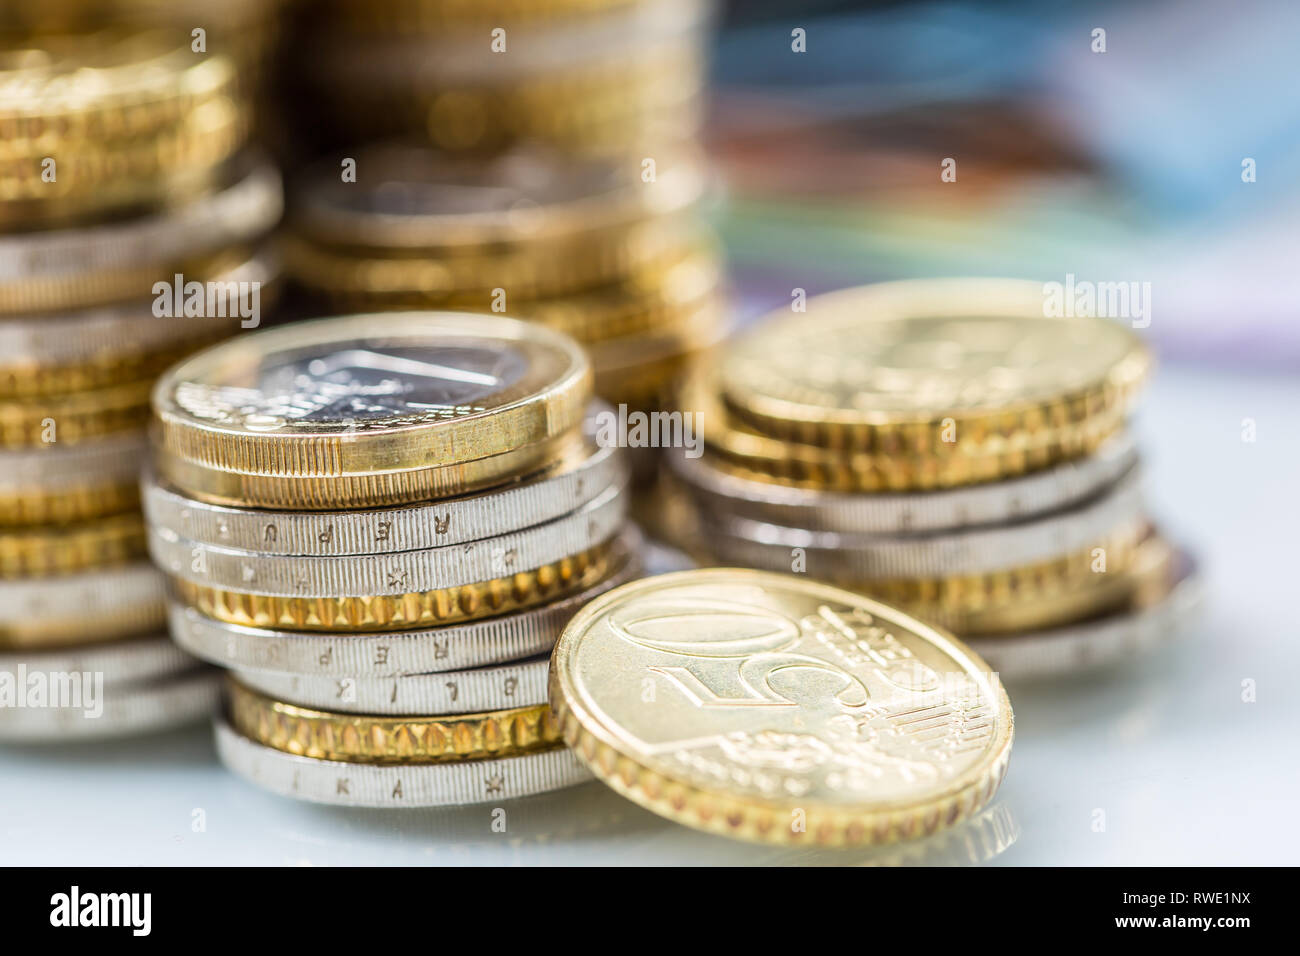 Tours avec des pièces en euros empilés - close-up Banque D'Images